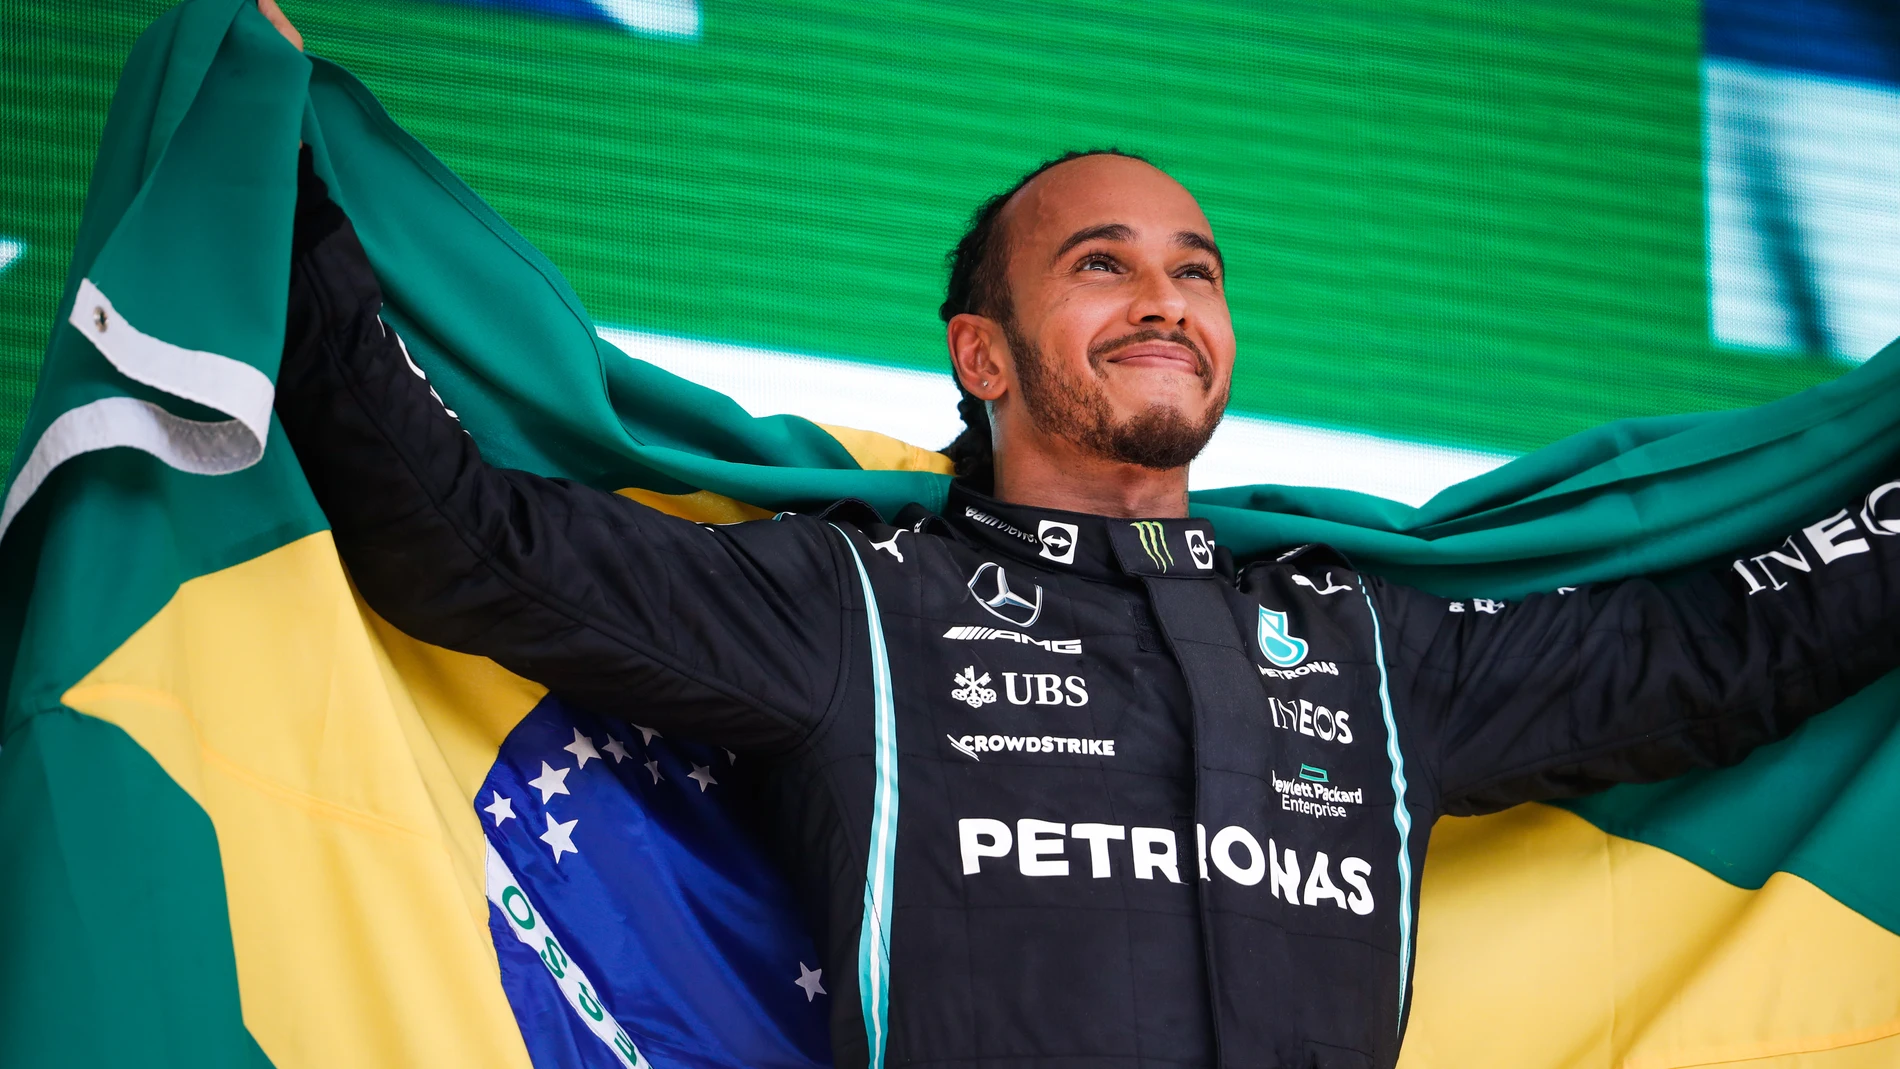 Lewis Hamilton celebró su triunfo con una bandera de Brasil en homenaje a Ayrton Senna.